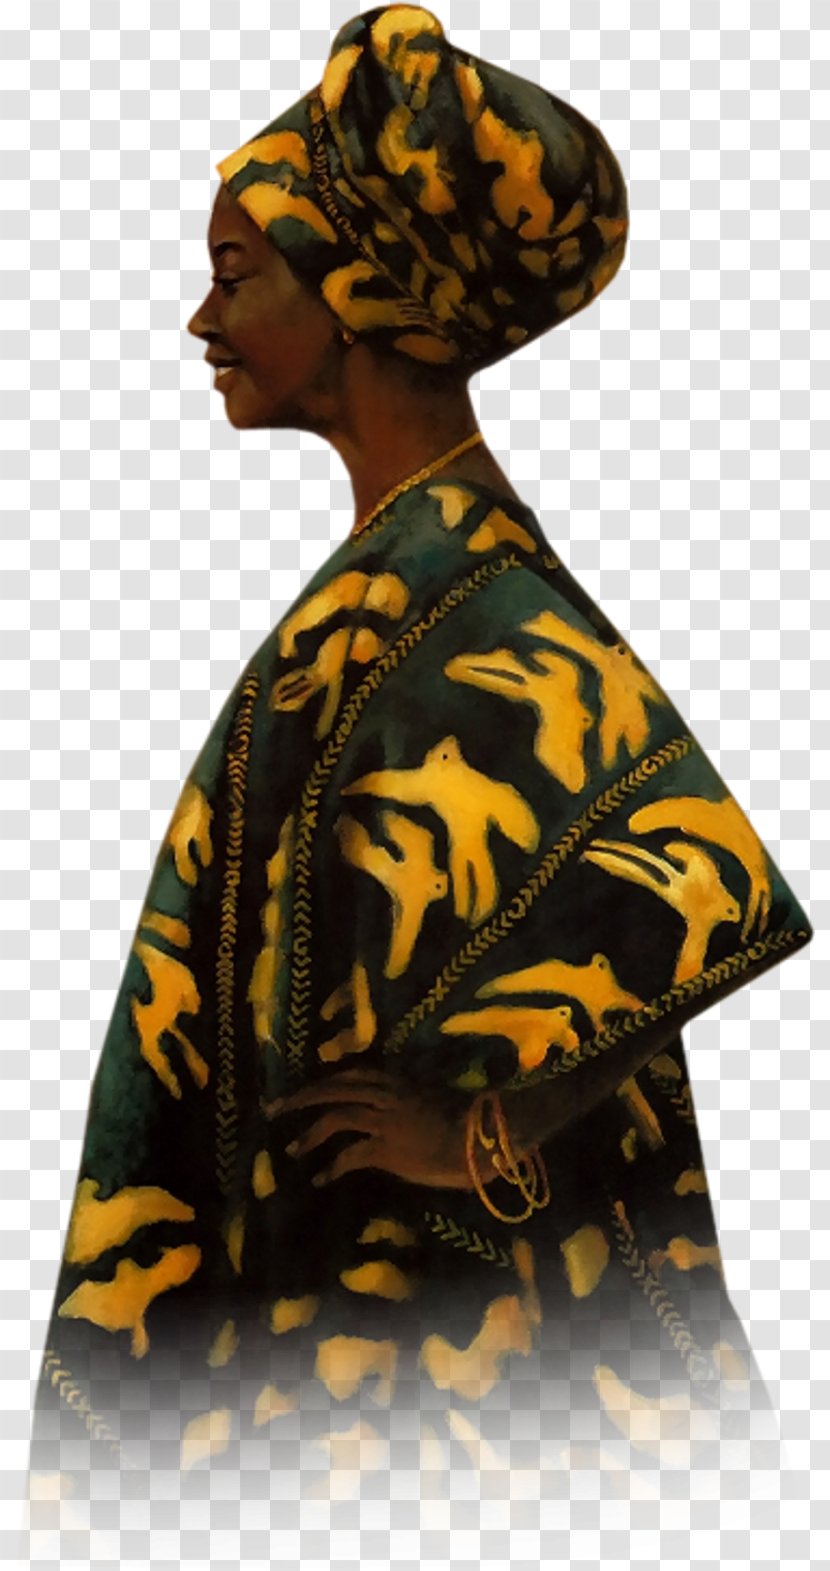 PaintShop Pro Microsoft Paint Tutorial - Paintshop - African Woman Transparent PNG